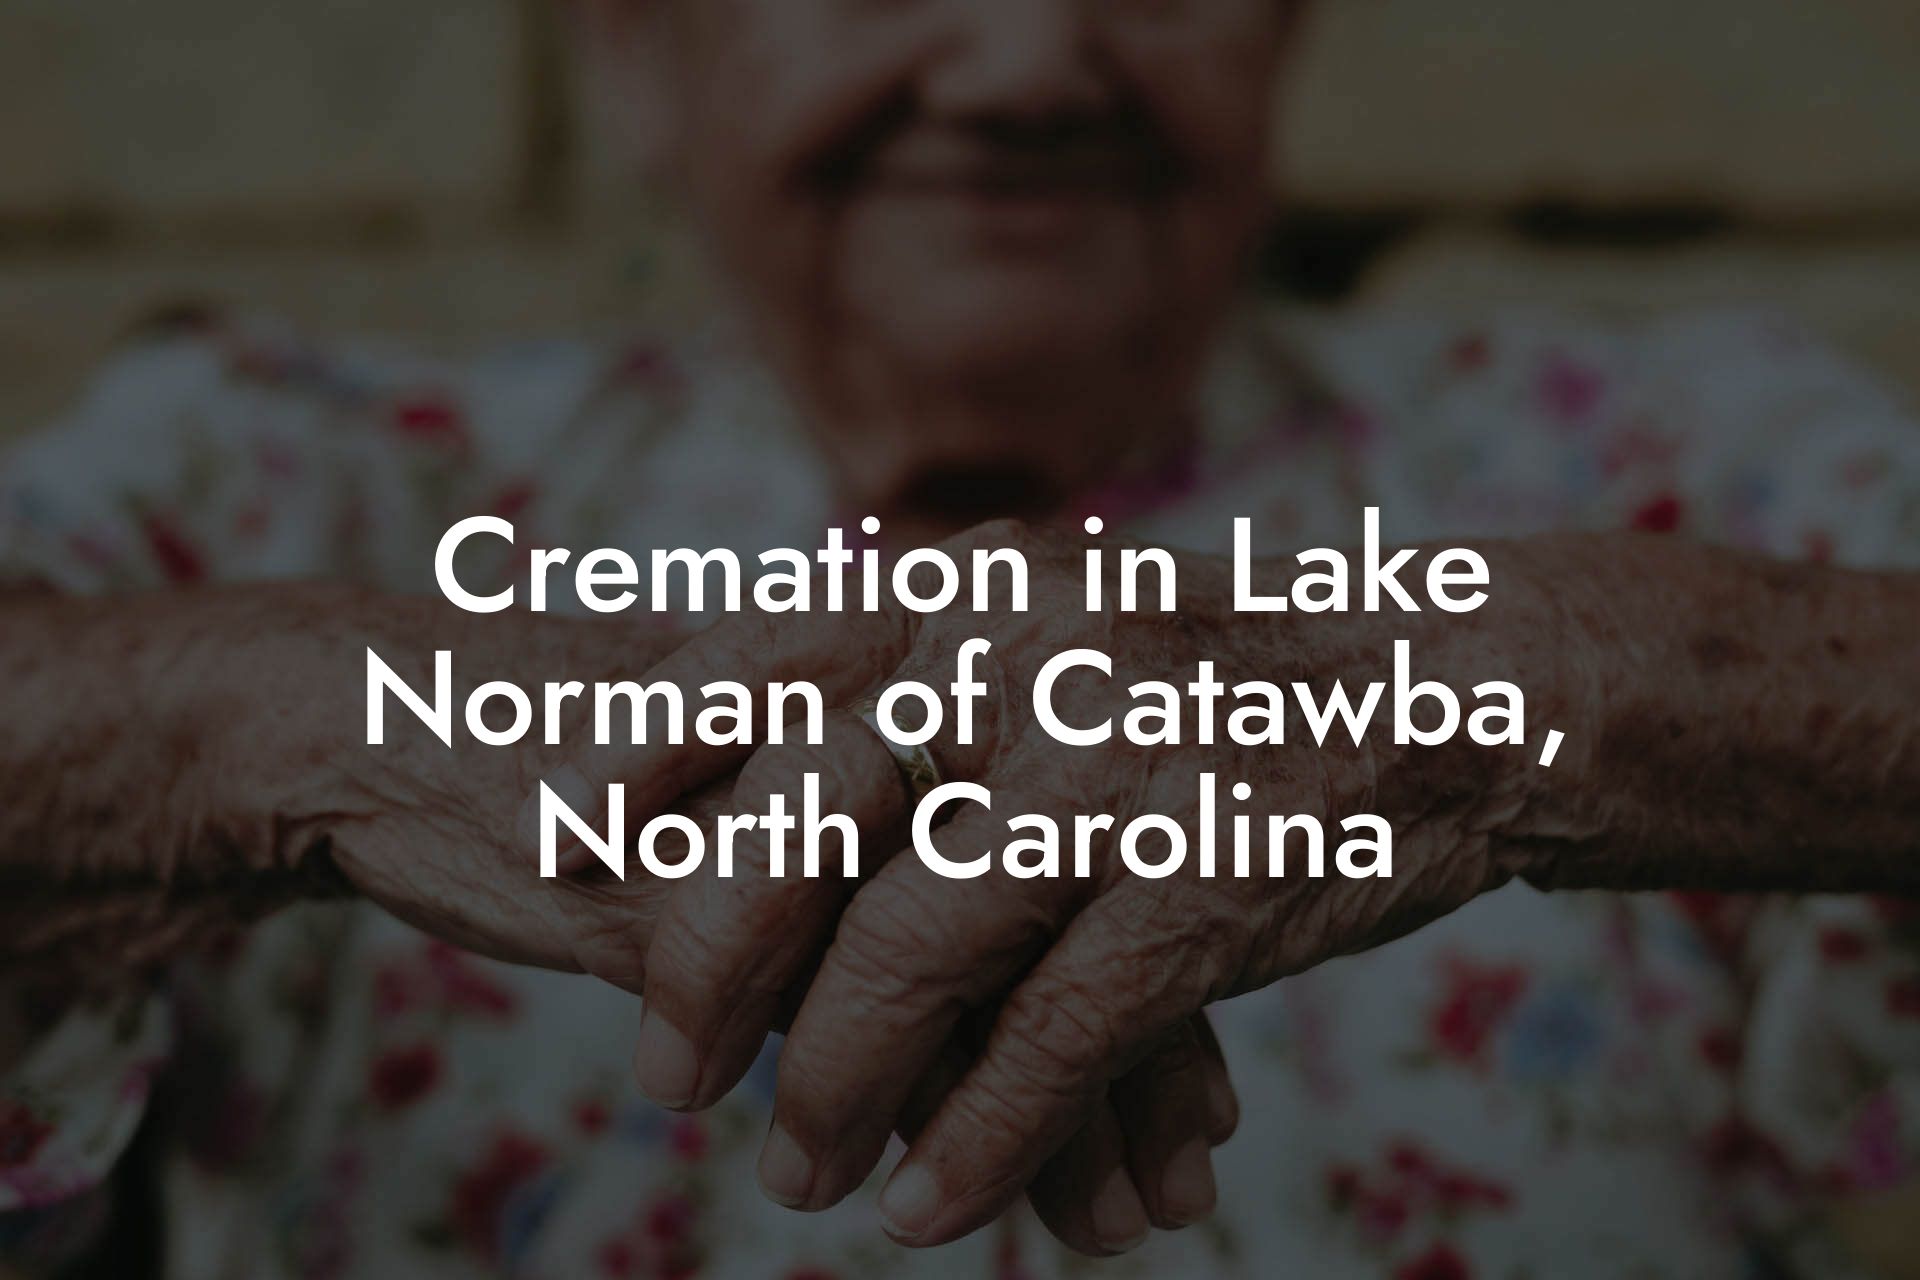 Cremation in Lake Norman of Catawba, North Carolina